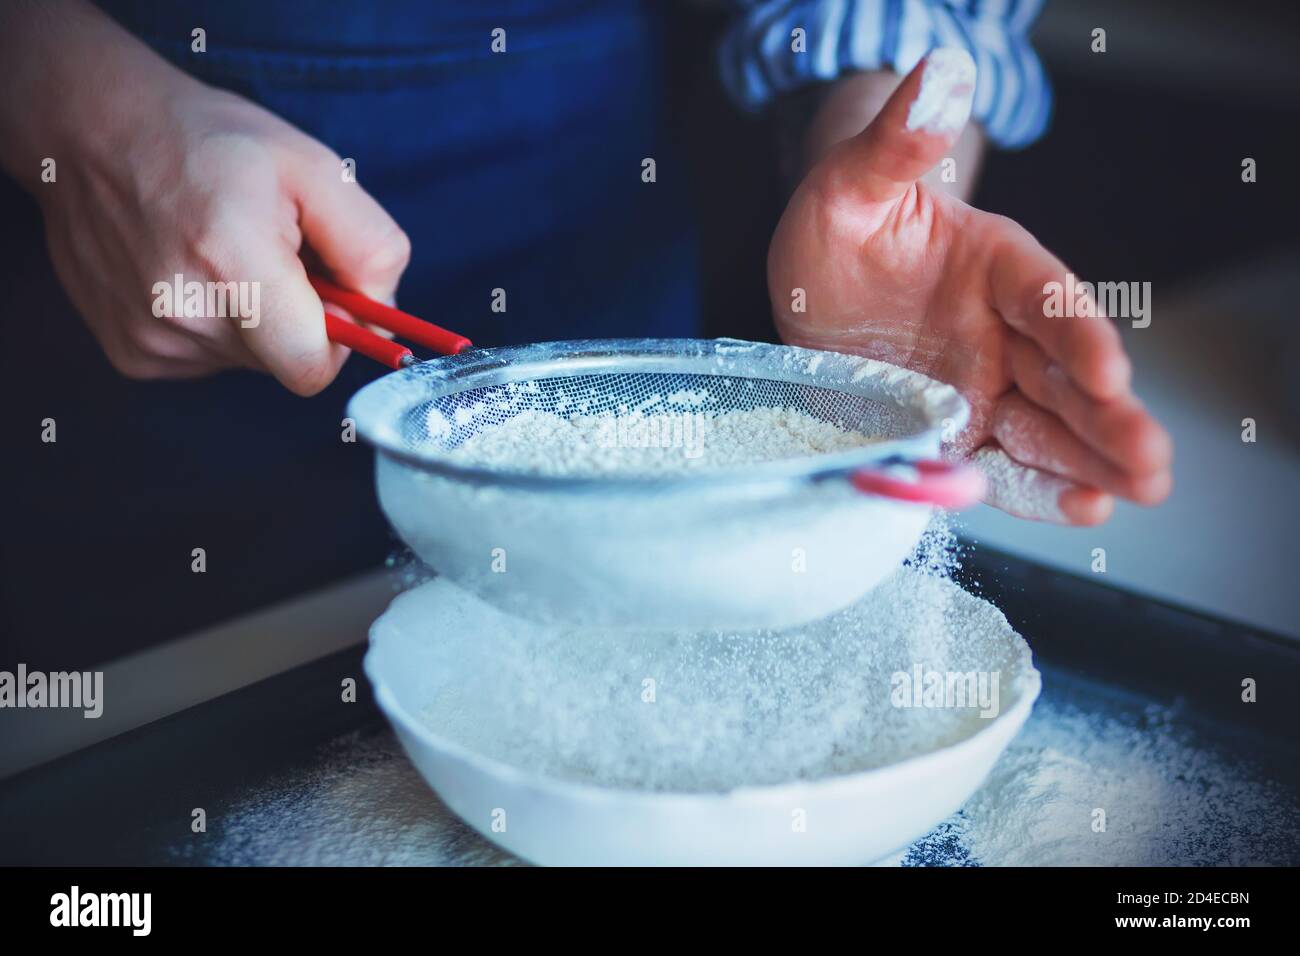 Ein Koch in einer blauen Schürze und einem gestreiften Hemd hält ein Sieb mit rotem Griff und verwendet es, um das krümelige Mehl in eine weiße Schüssel zu sieben. Hausmannskost. Stockfoto